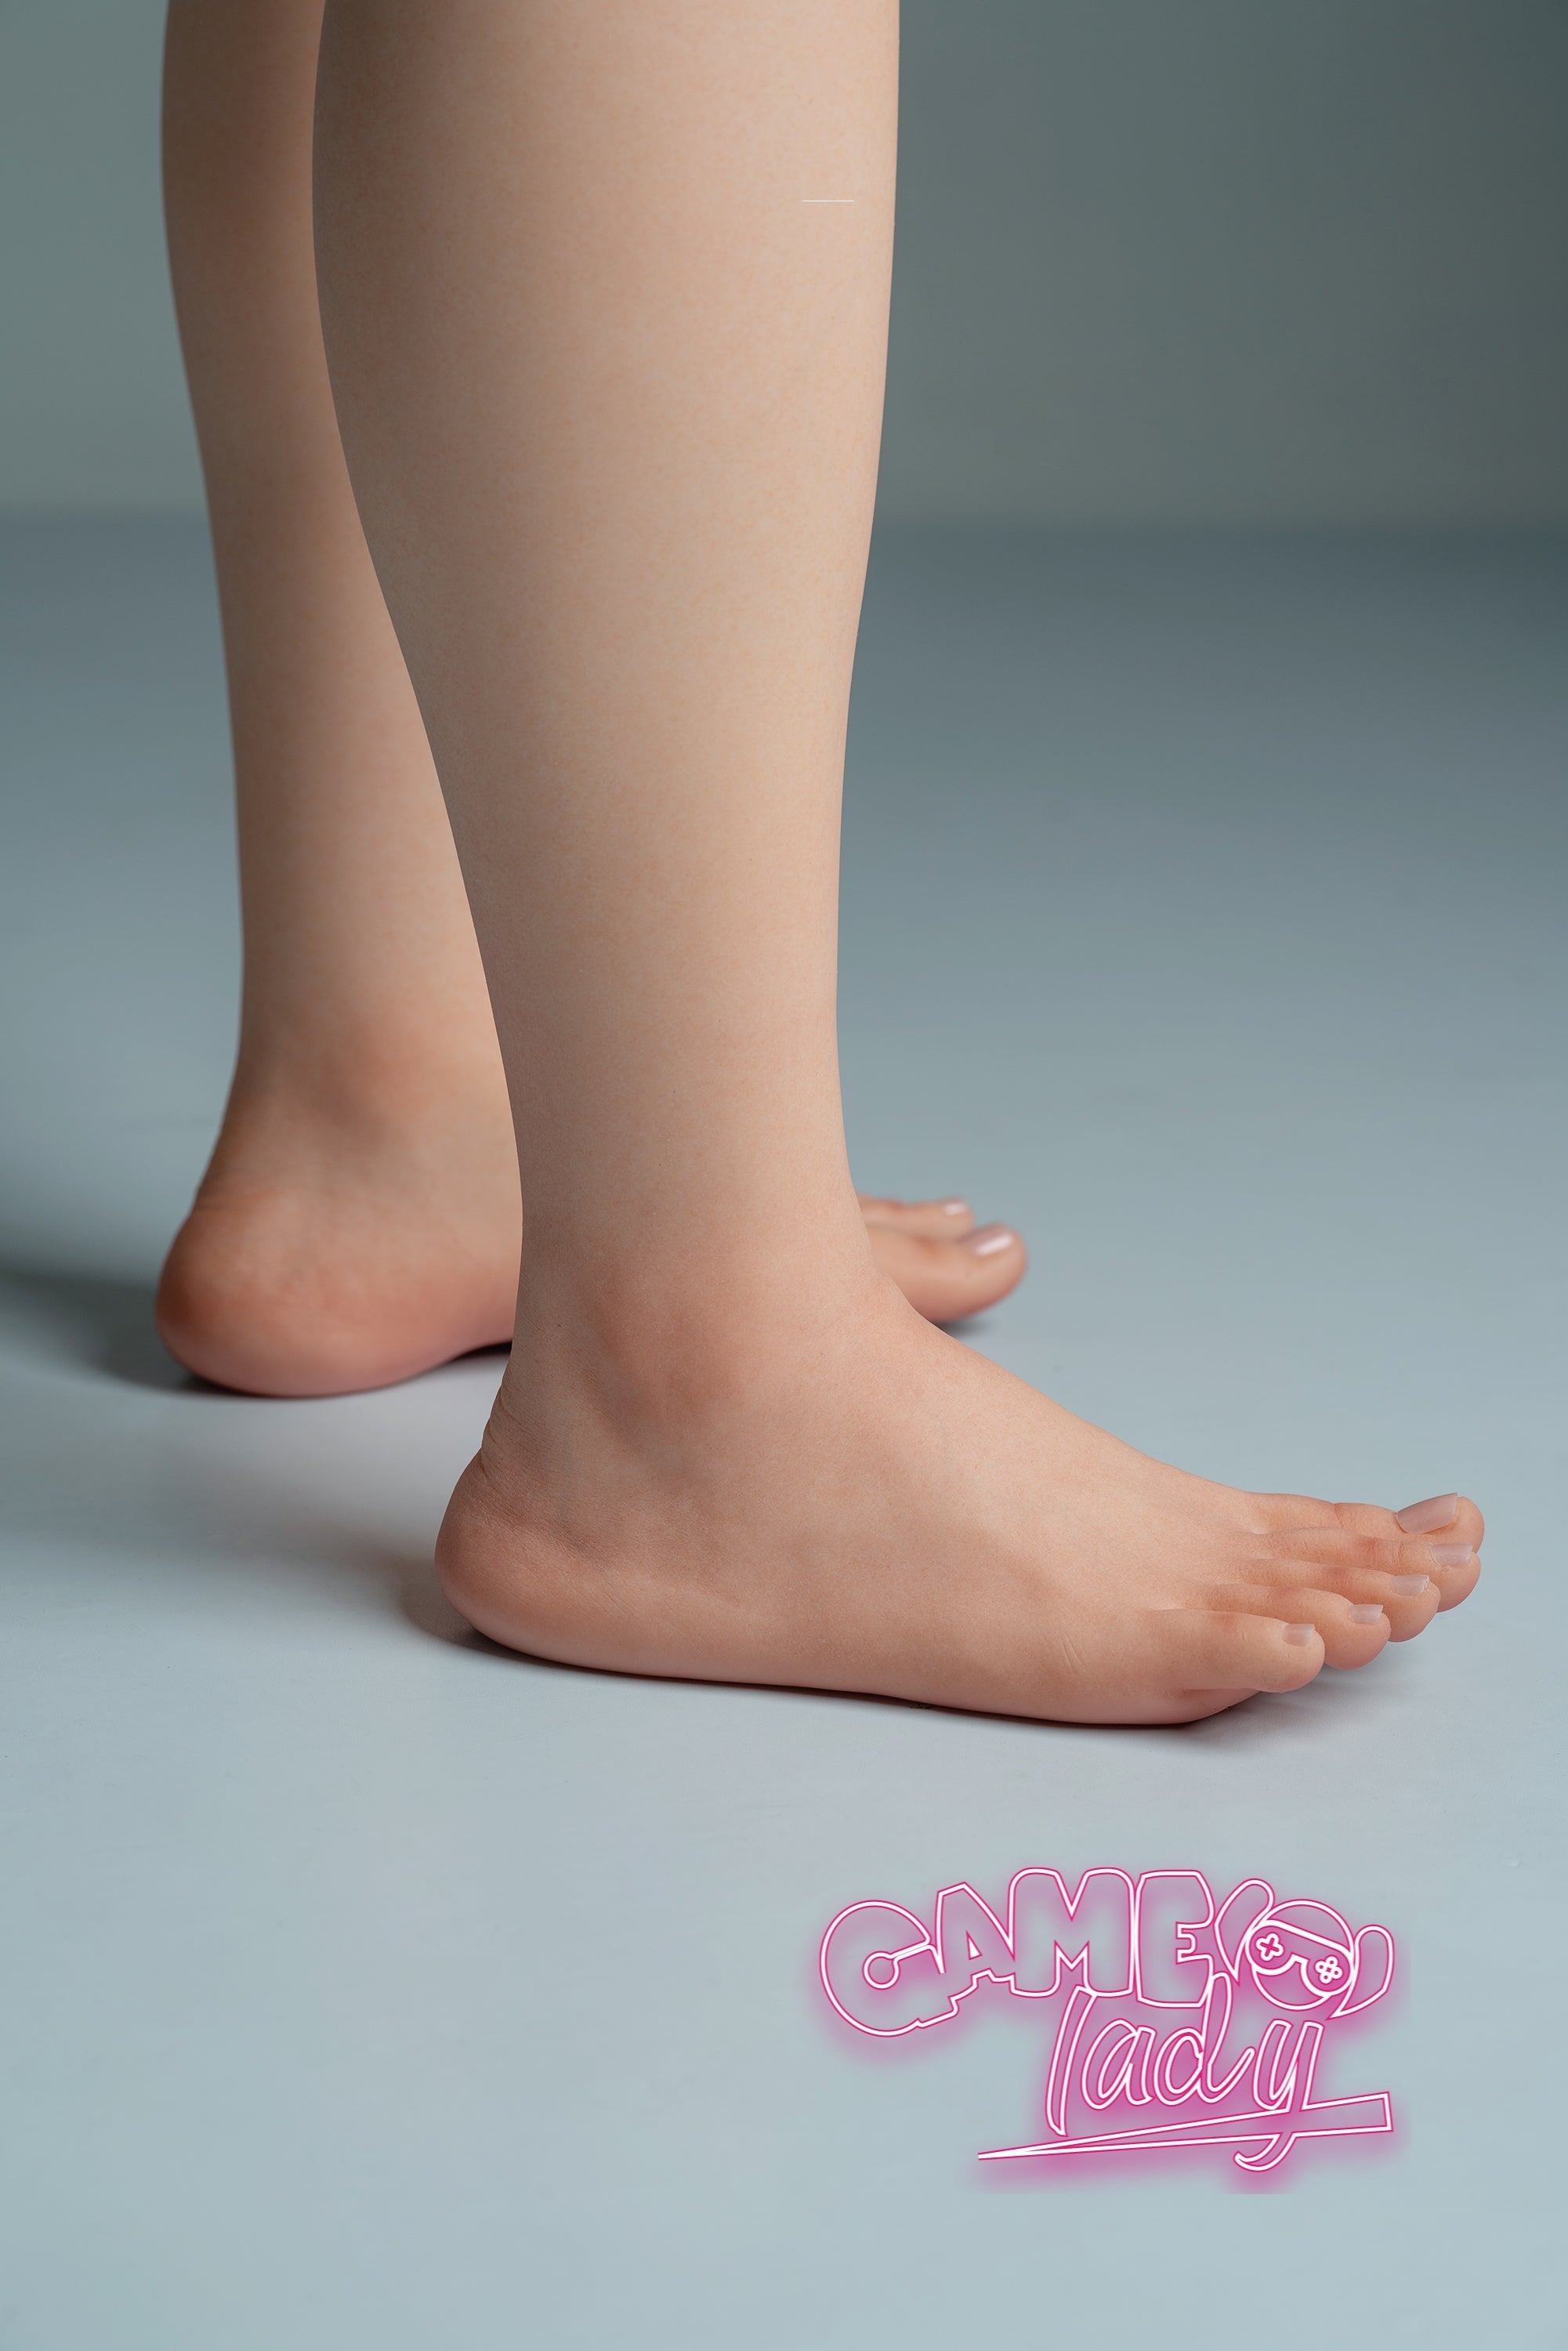 Game Lady 168 cm Silicone - Aerith | Sex Dolls SG